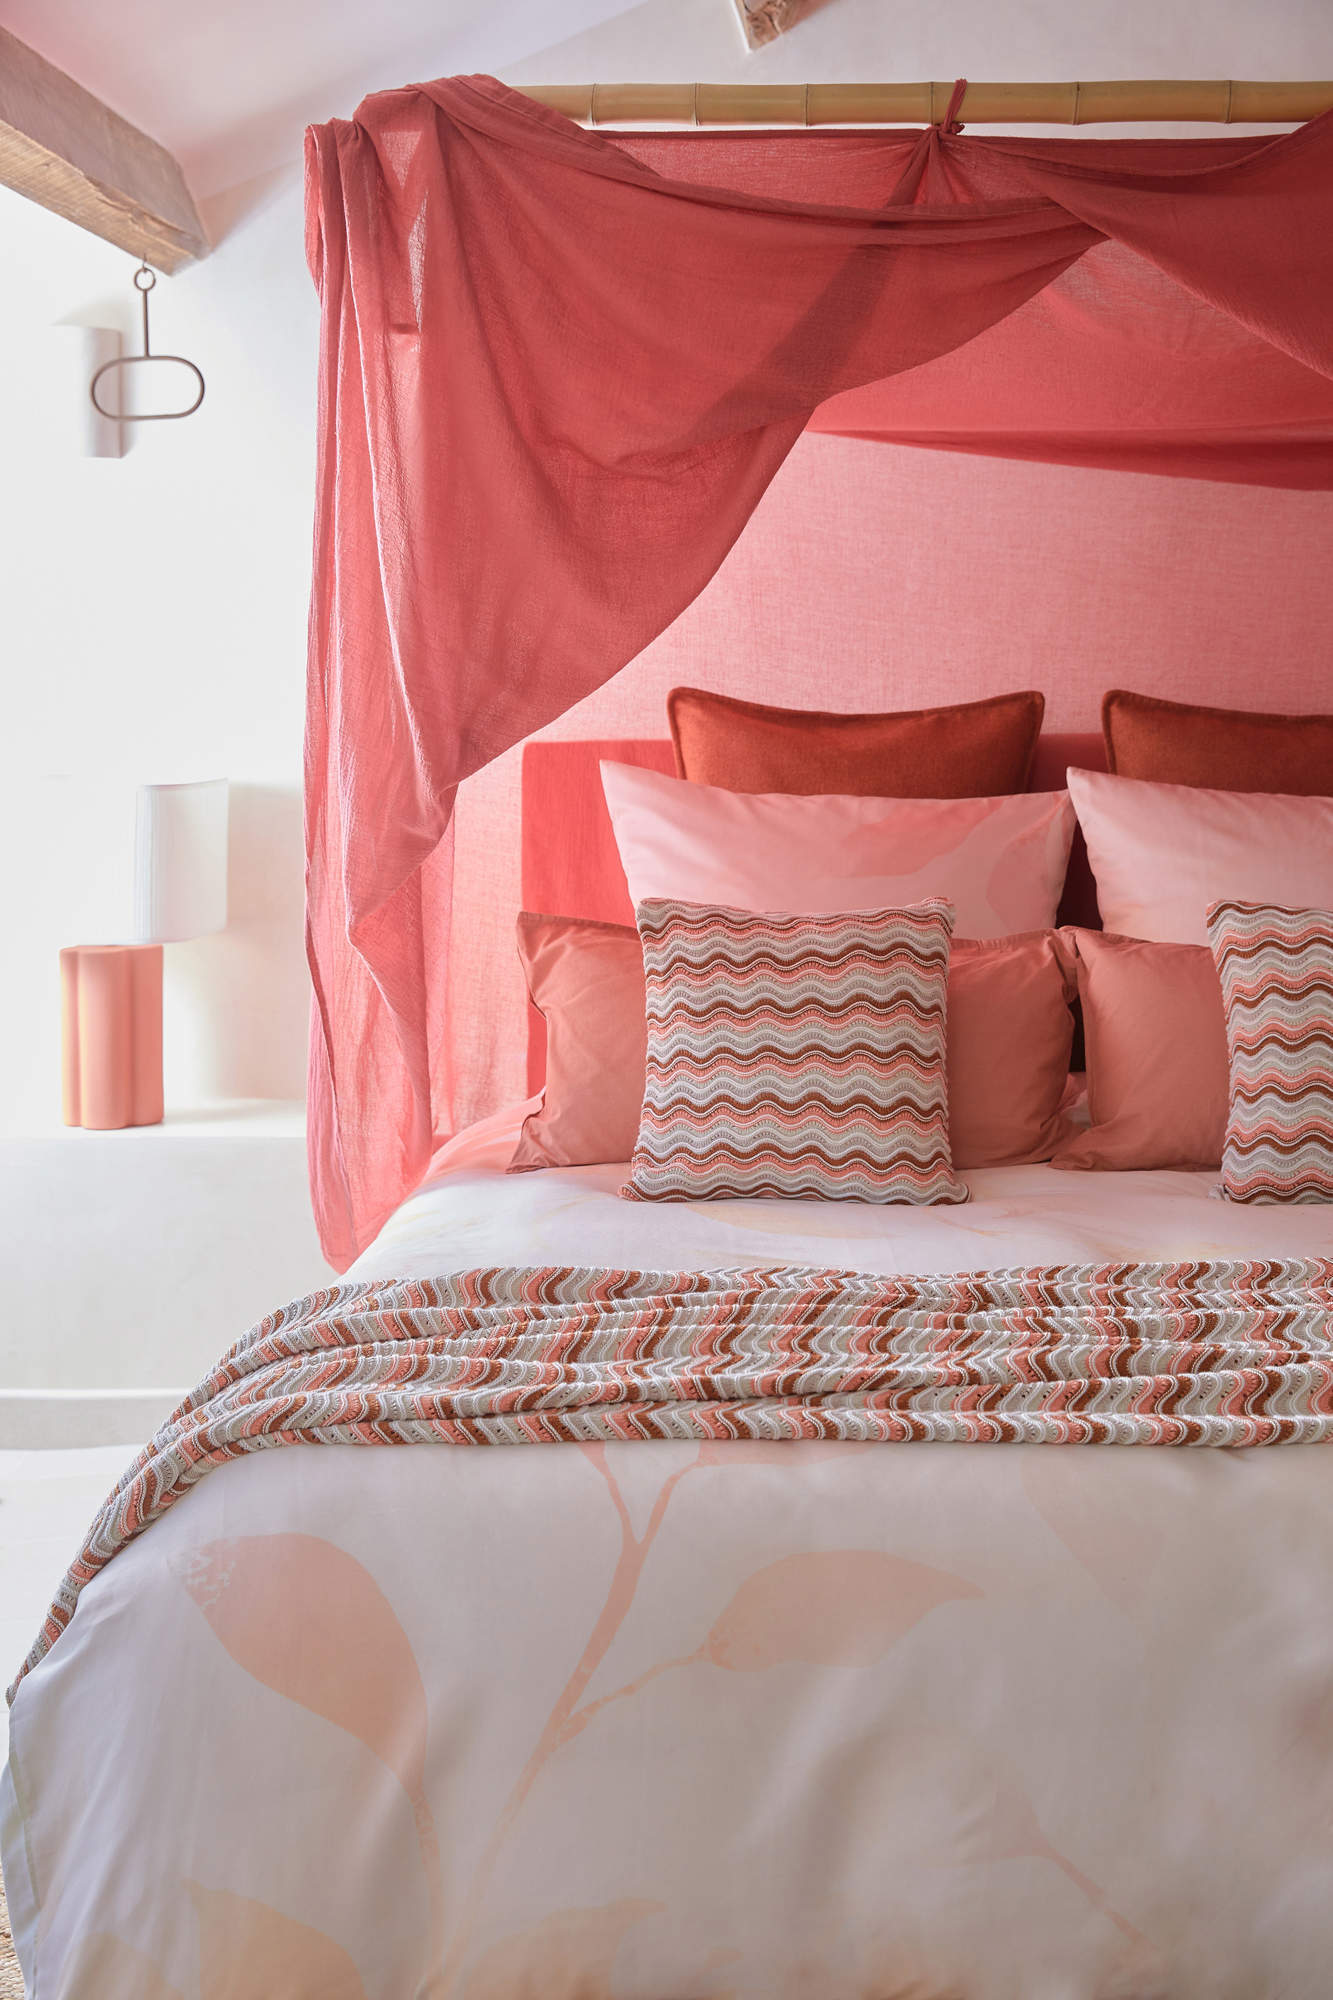 Dormitorio con dosel y textiles en tonos rosas.